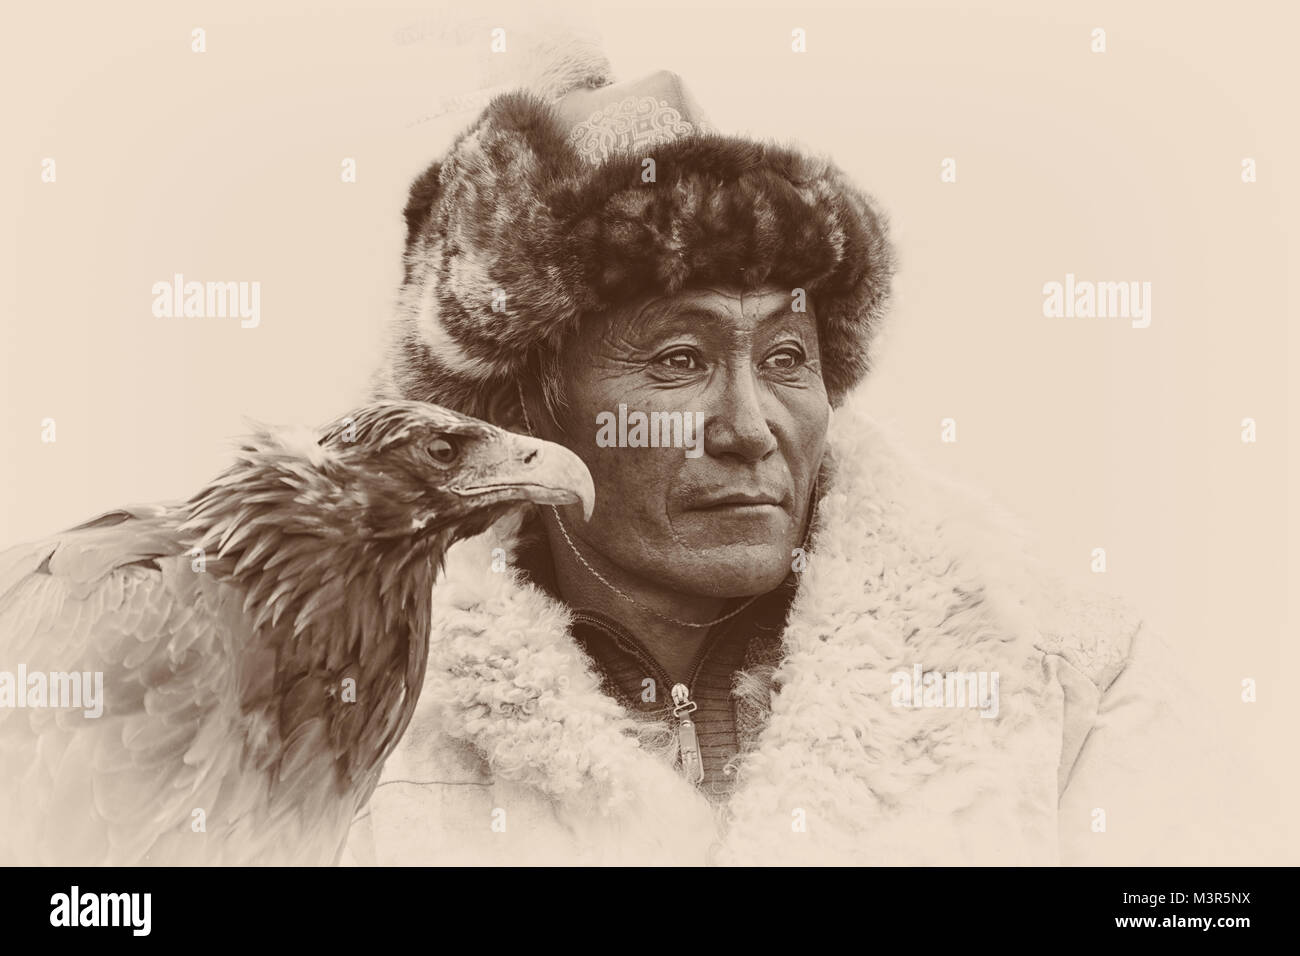 Golden Eagle festival aquile e cacciatori cacciatrice seppia collezione serie b&w ritratti Ulgii kazako costumi tradizionali Foto Stock